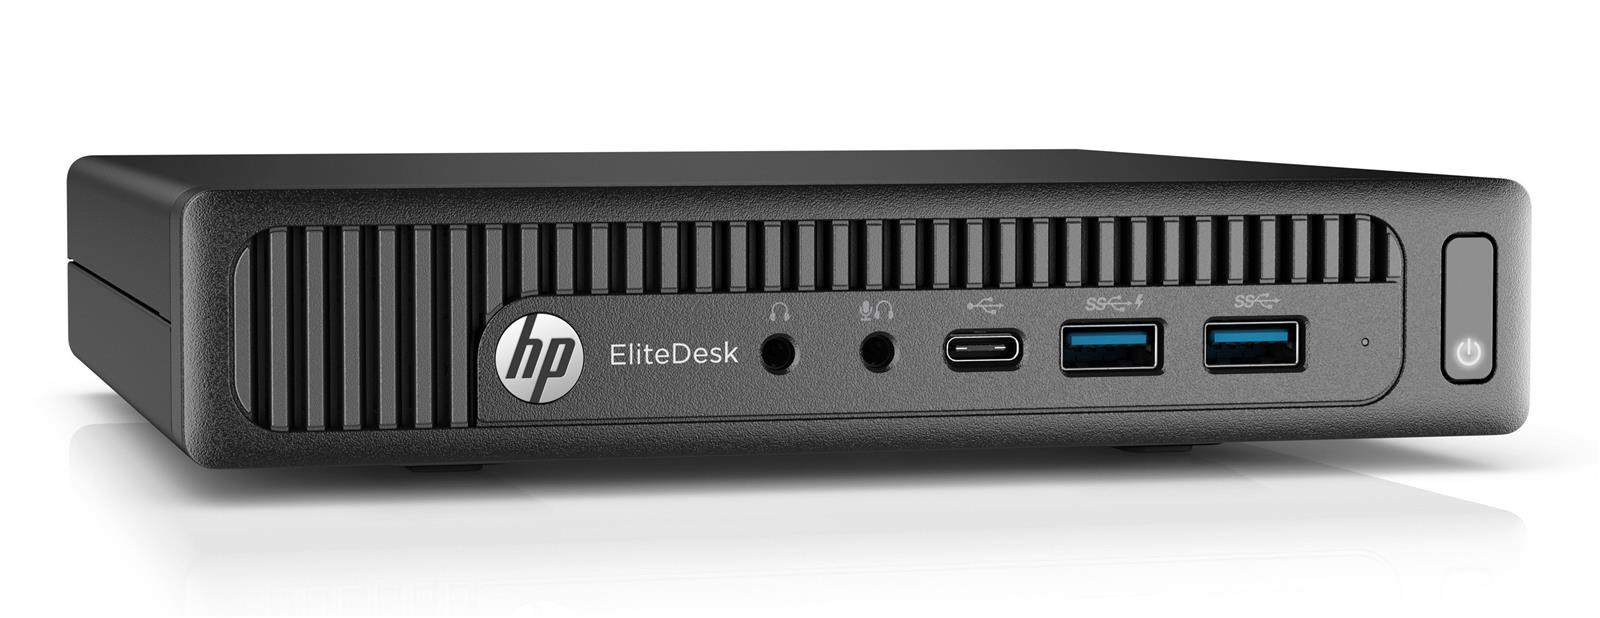 HP EliteDesk 800 G2 Mini | i3-6100T | 8GB RAM | 128GB SSD + 500GB HDD | Win 10 Pro